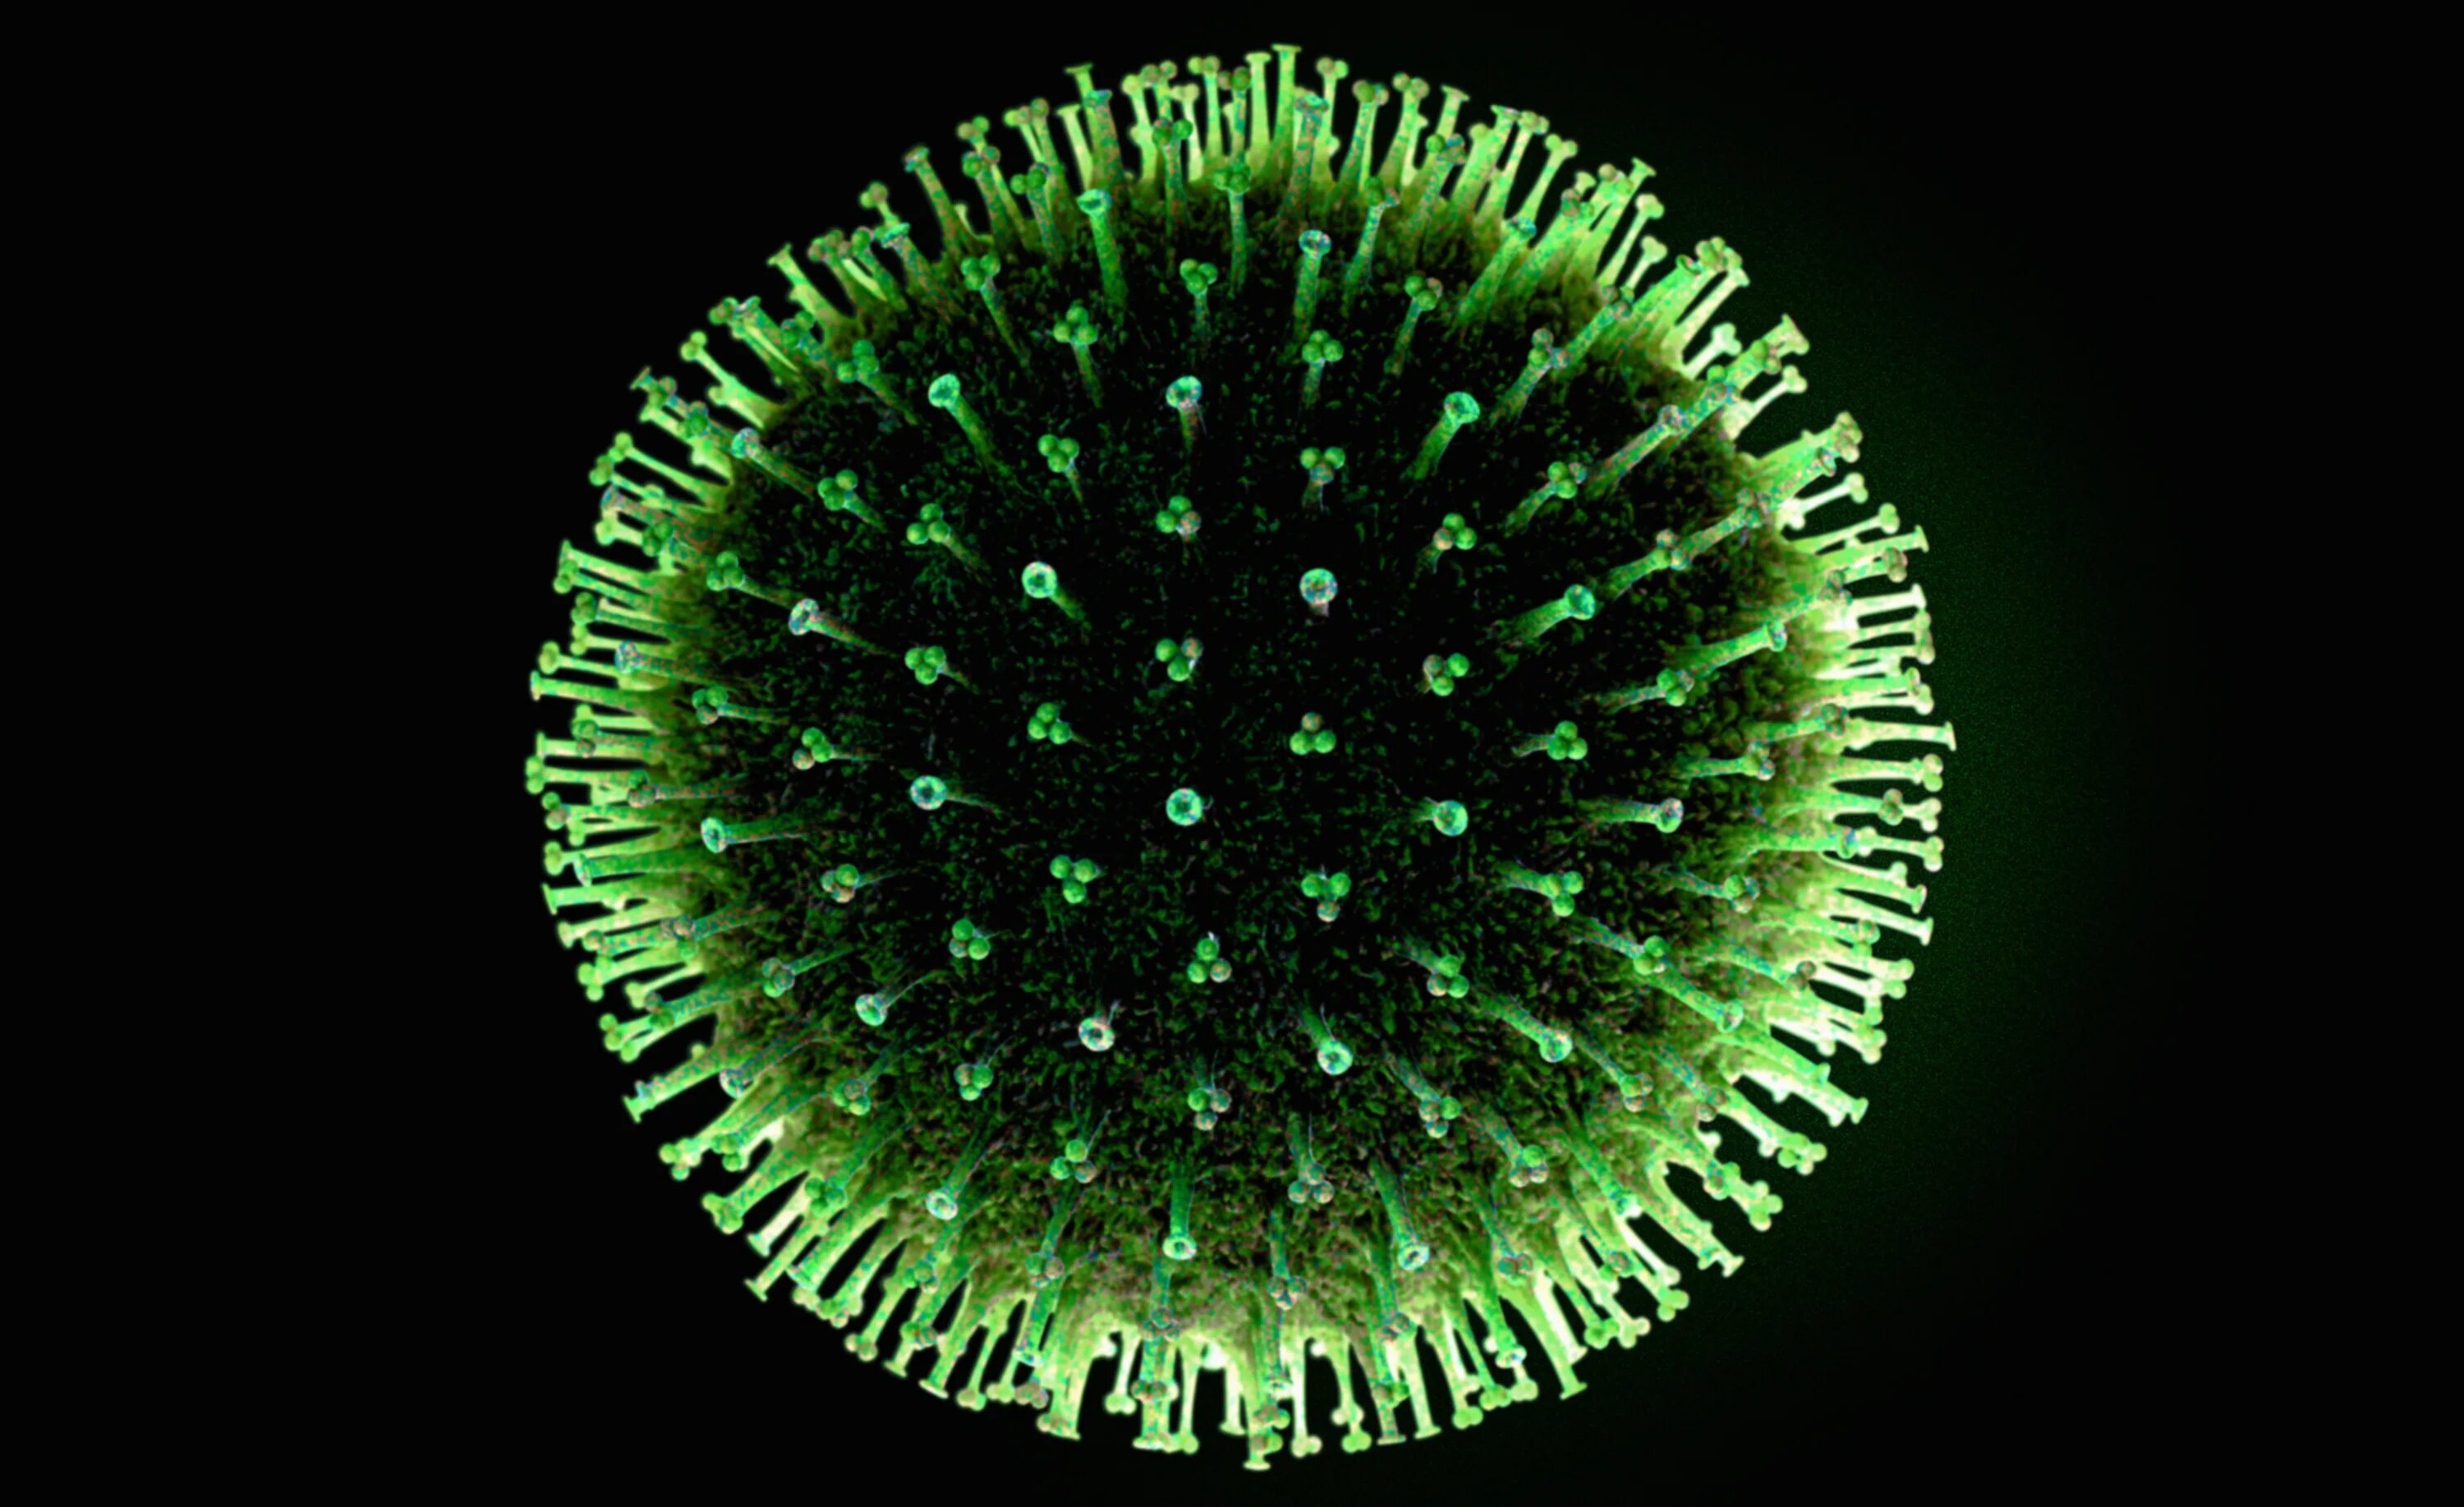 Www virus. Вирус h3n2. Вирусы фото. Вирус круглый. Изображение вируса.